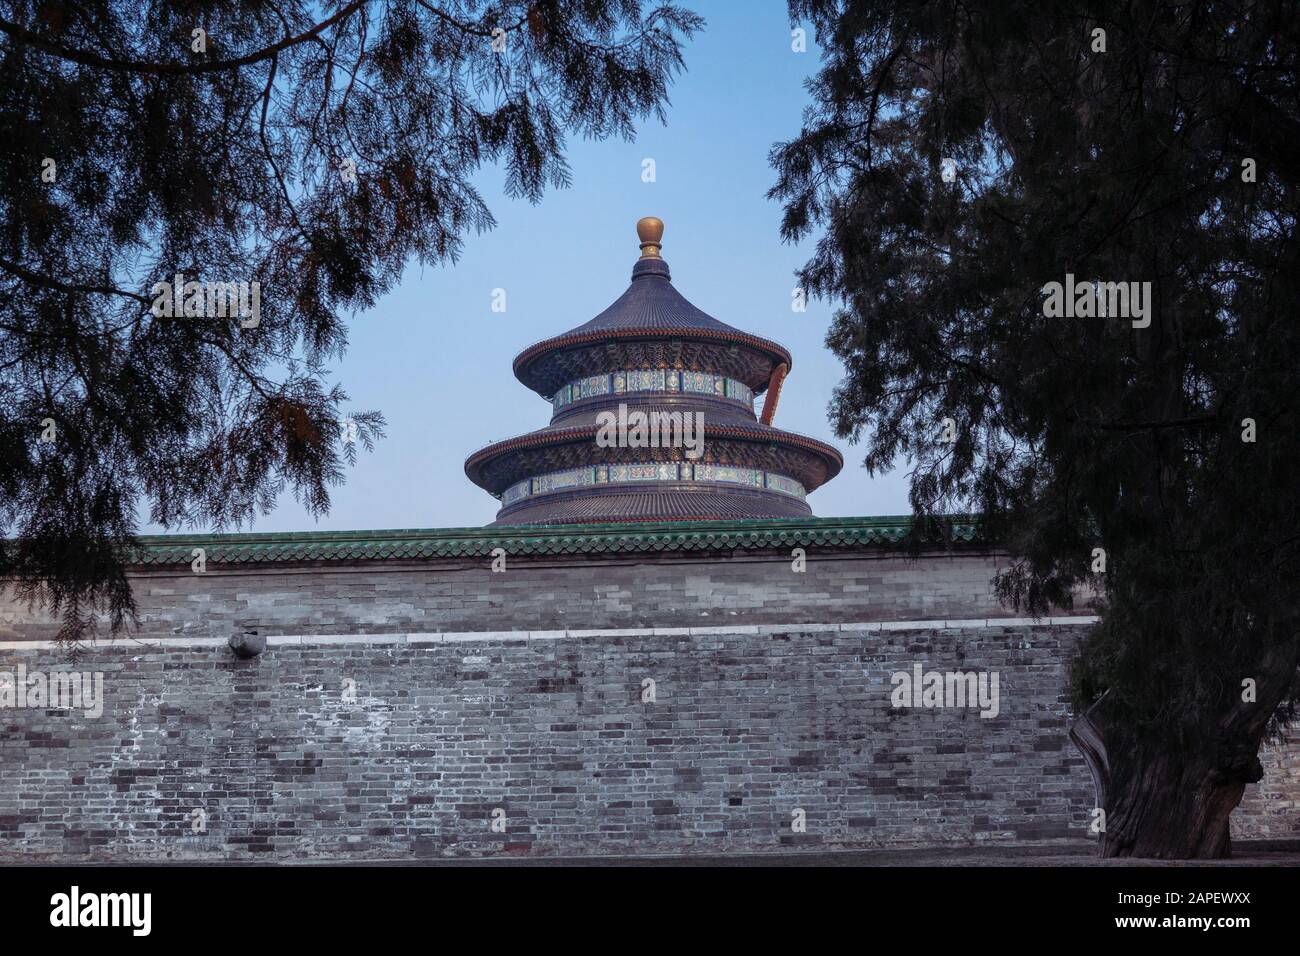 La Sala de Oración por La buena cosecha en el Templo del Cielo (Tian tan) en China, Beijing, visible desde detrás de la pared y la tria. Arquitectura China Foto de stock